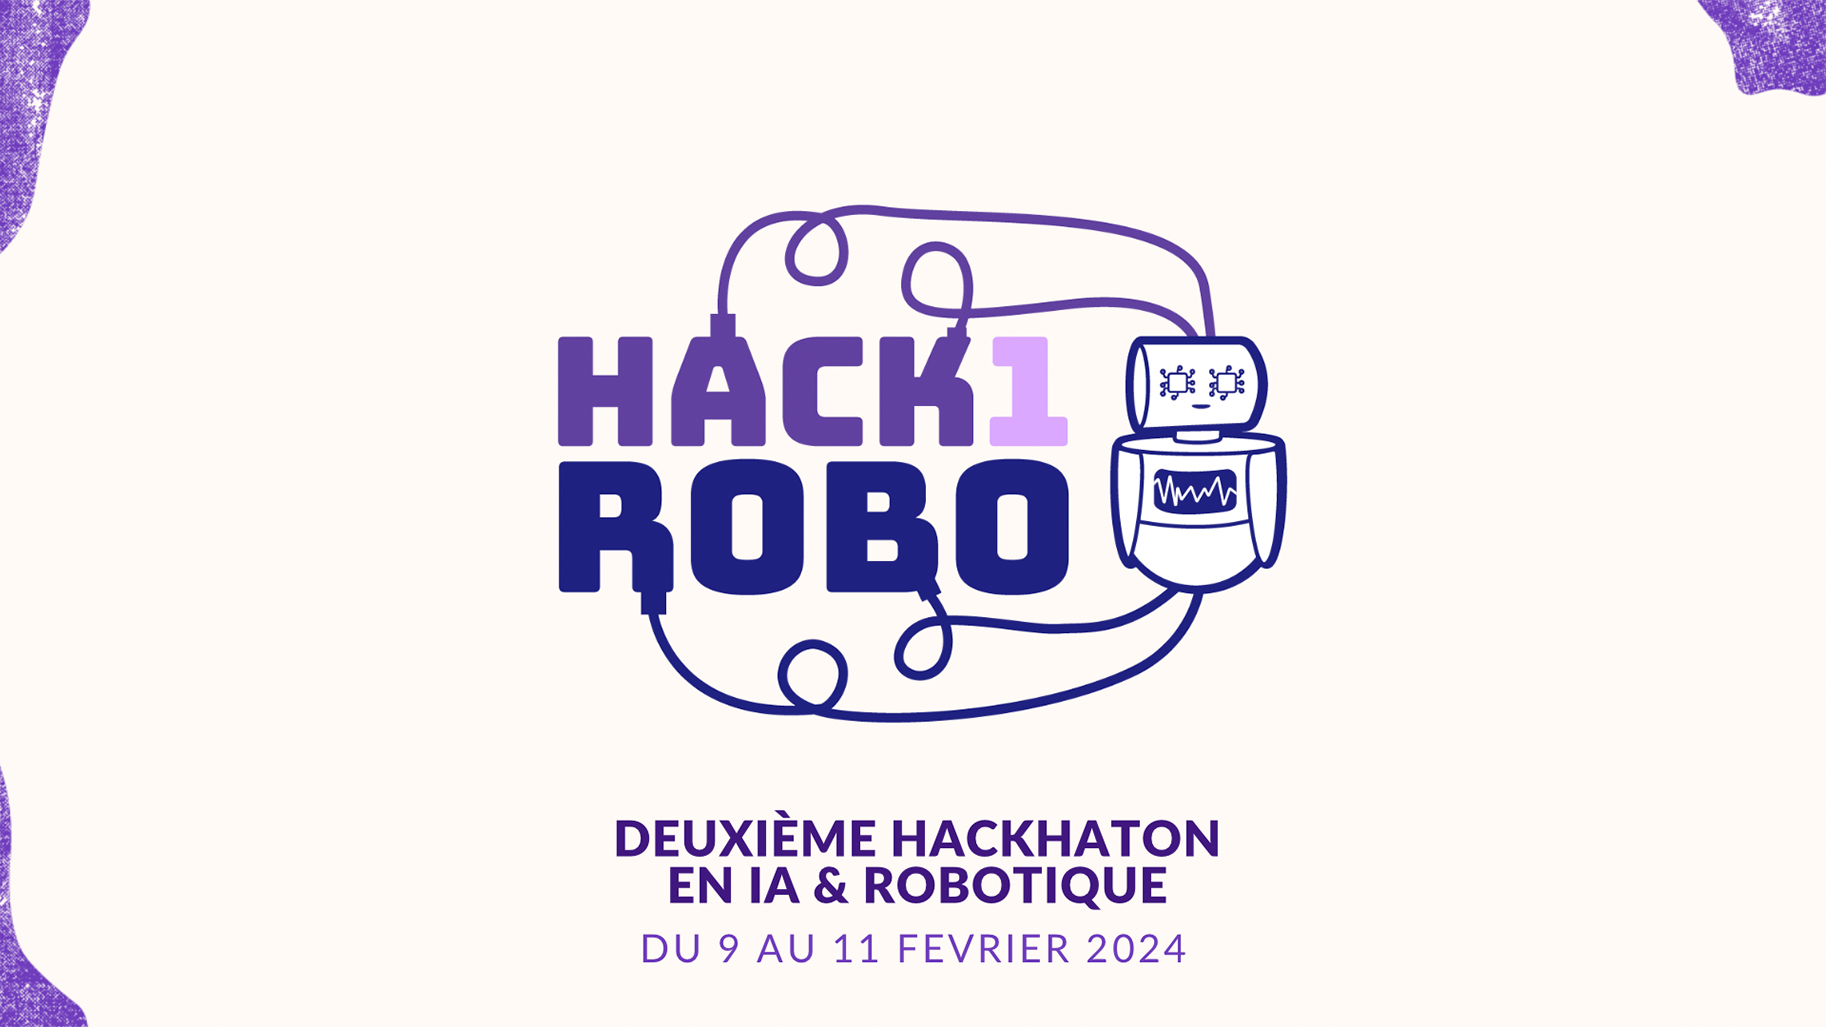 hack1robo